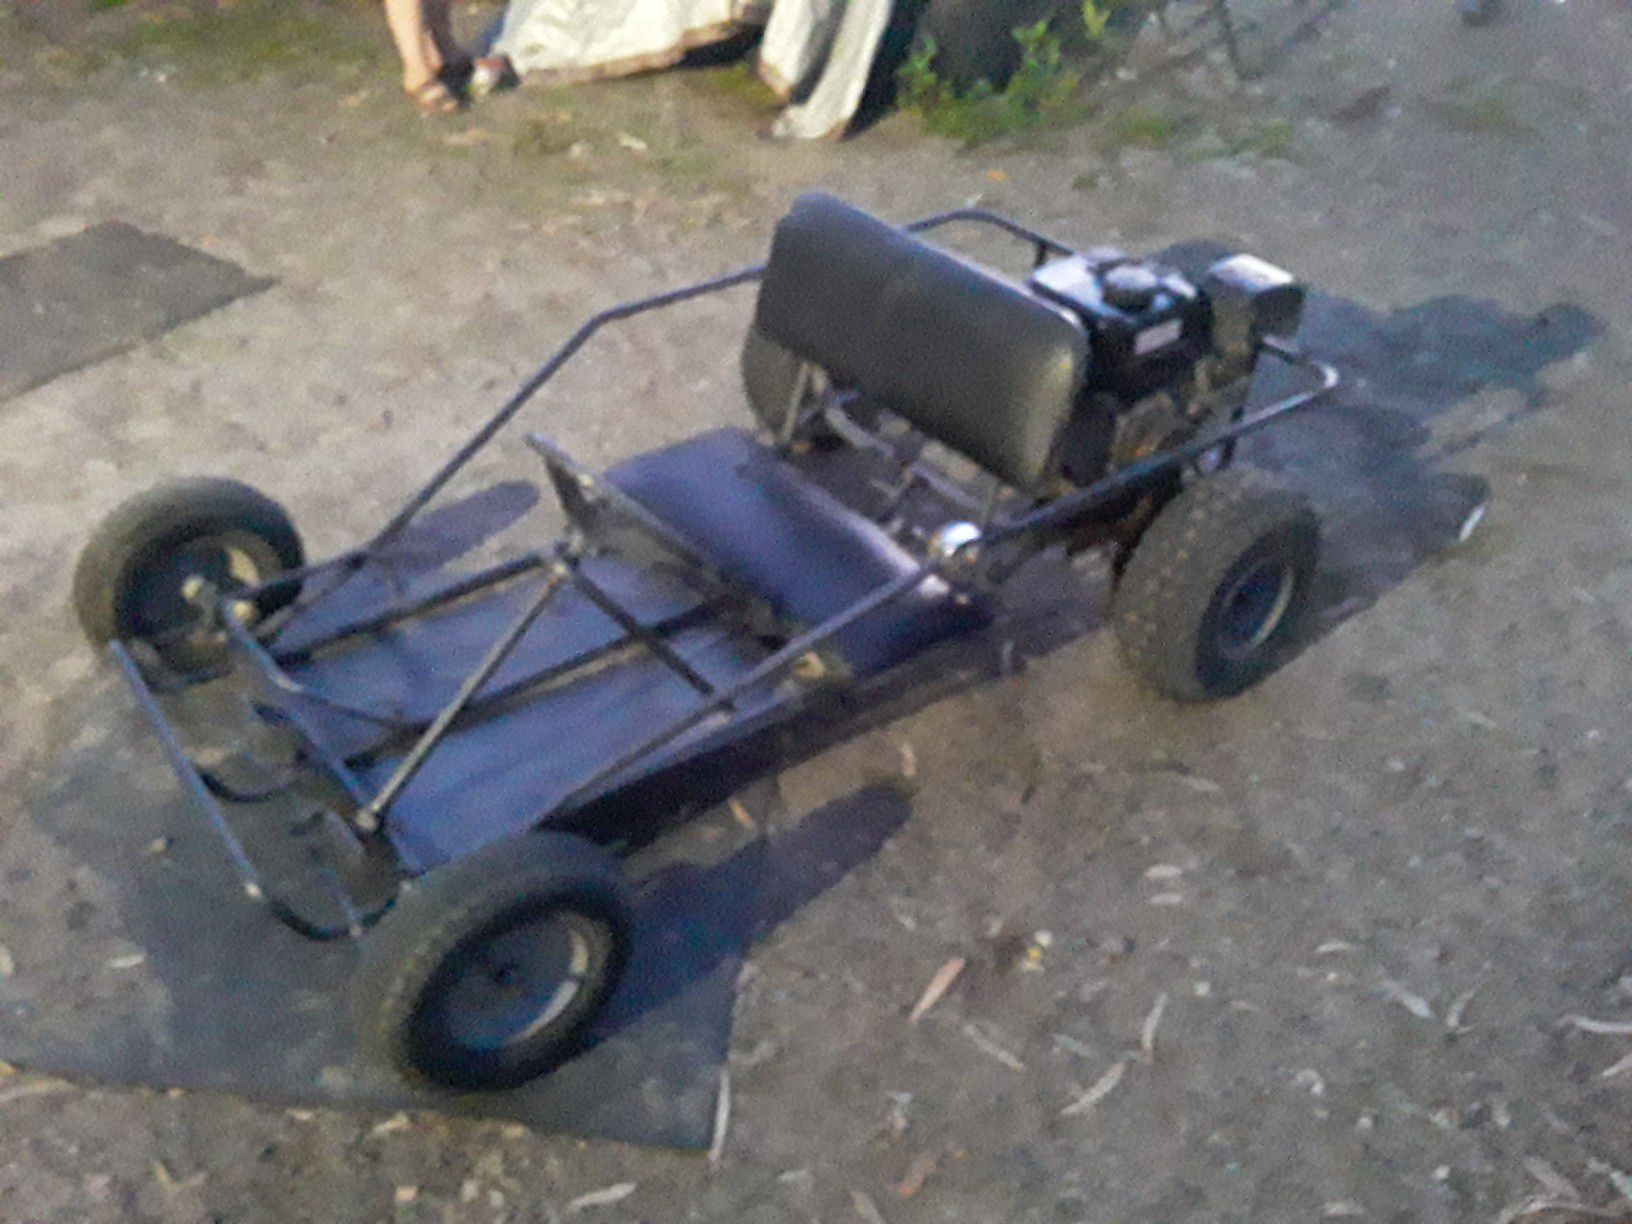 212 cc go cart